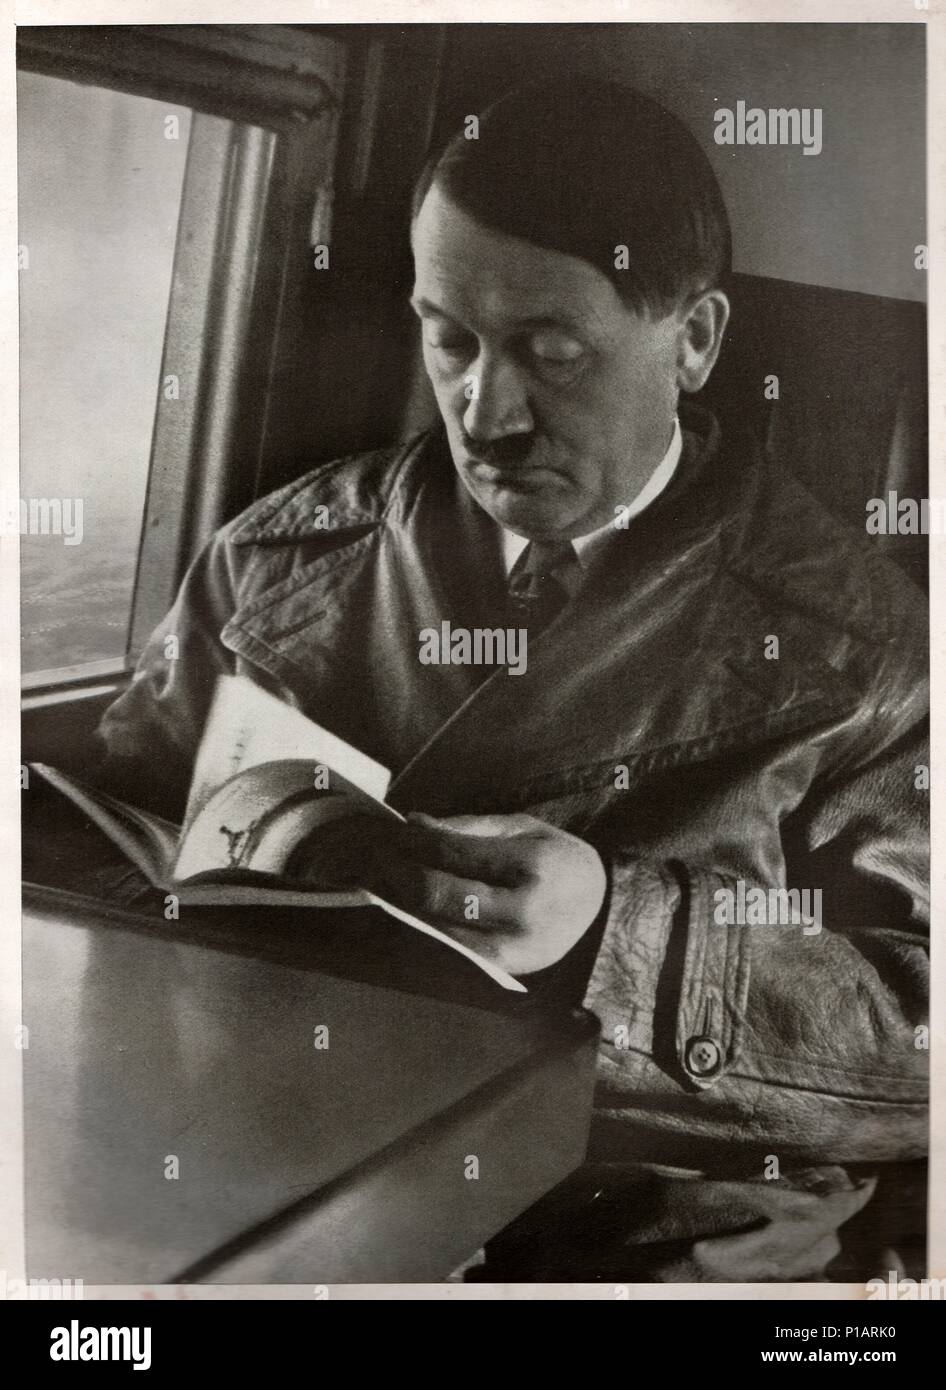 Deutschland - 19. AUGUST 1934: Adolf Hitler als "Führer und Reichskanzler" ("Führer und Kanzler"), leader von Nazi-deutschland. Reproduktion antiker Foto. Stockfoto